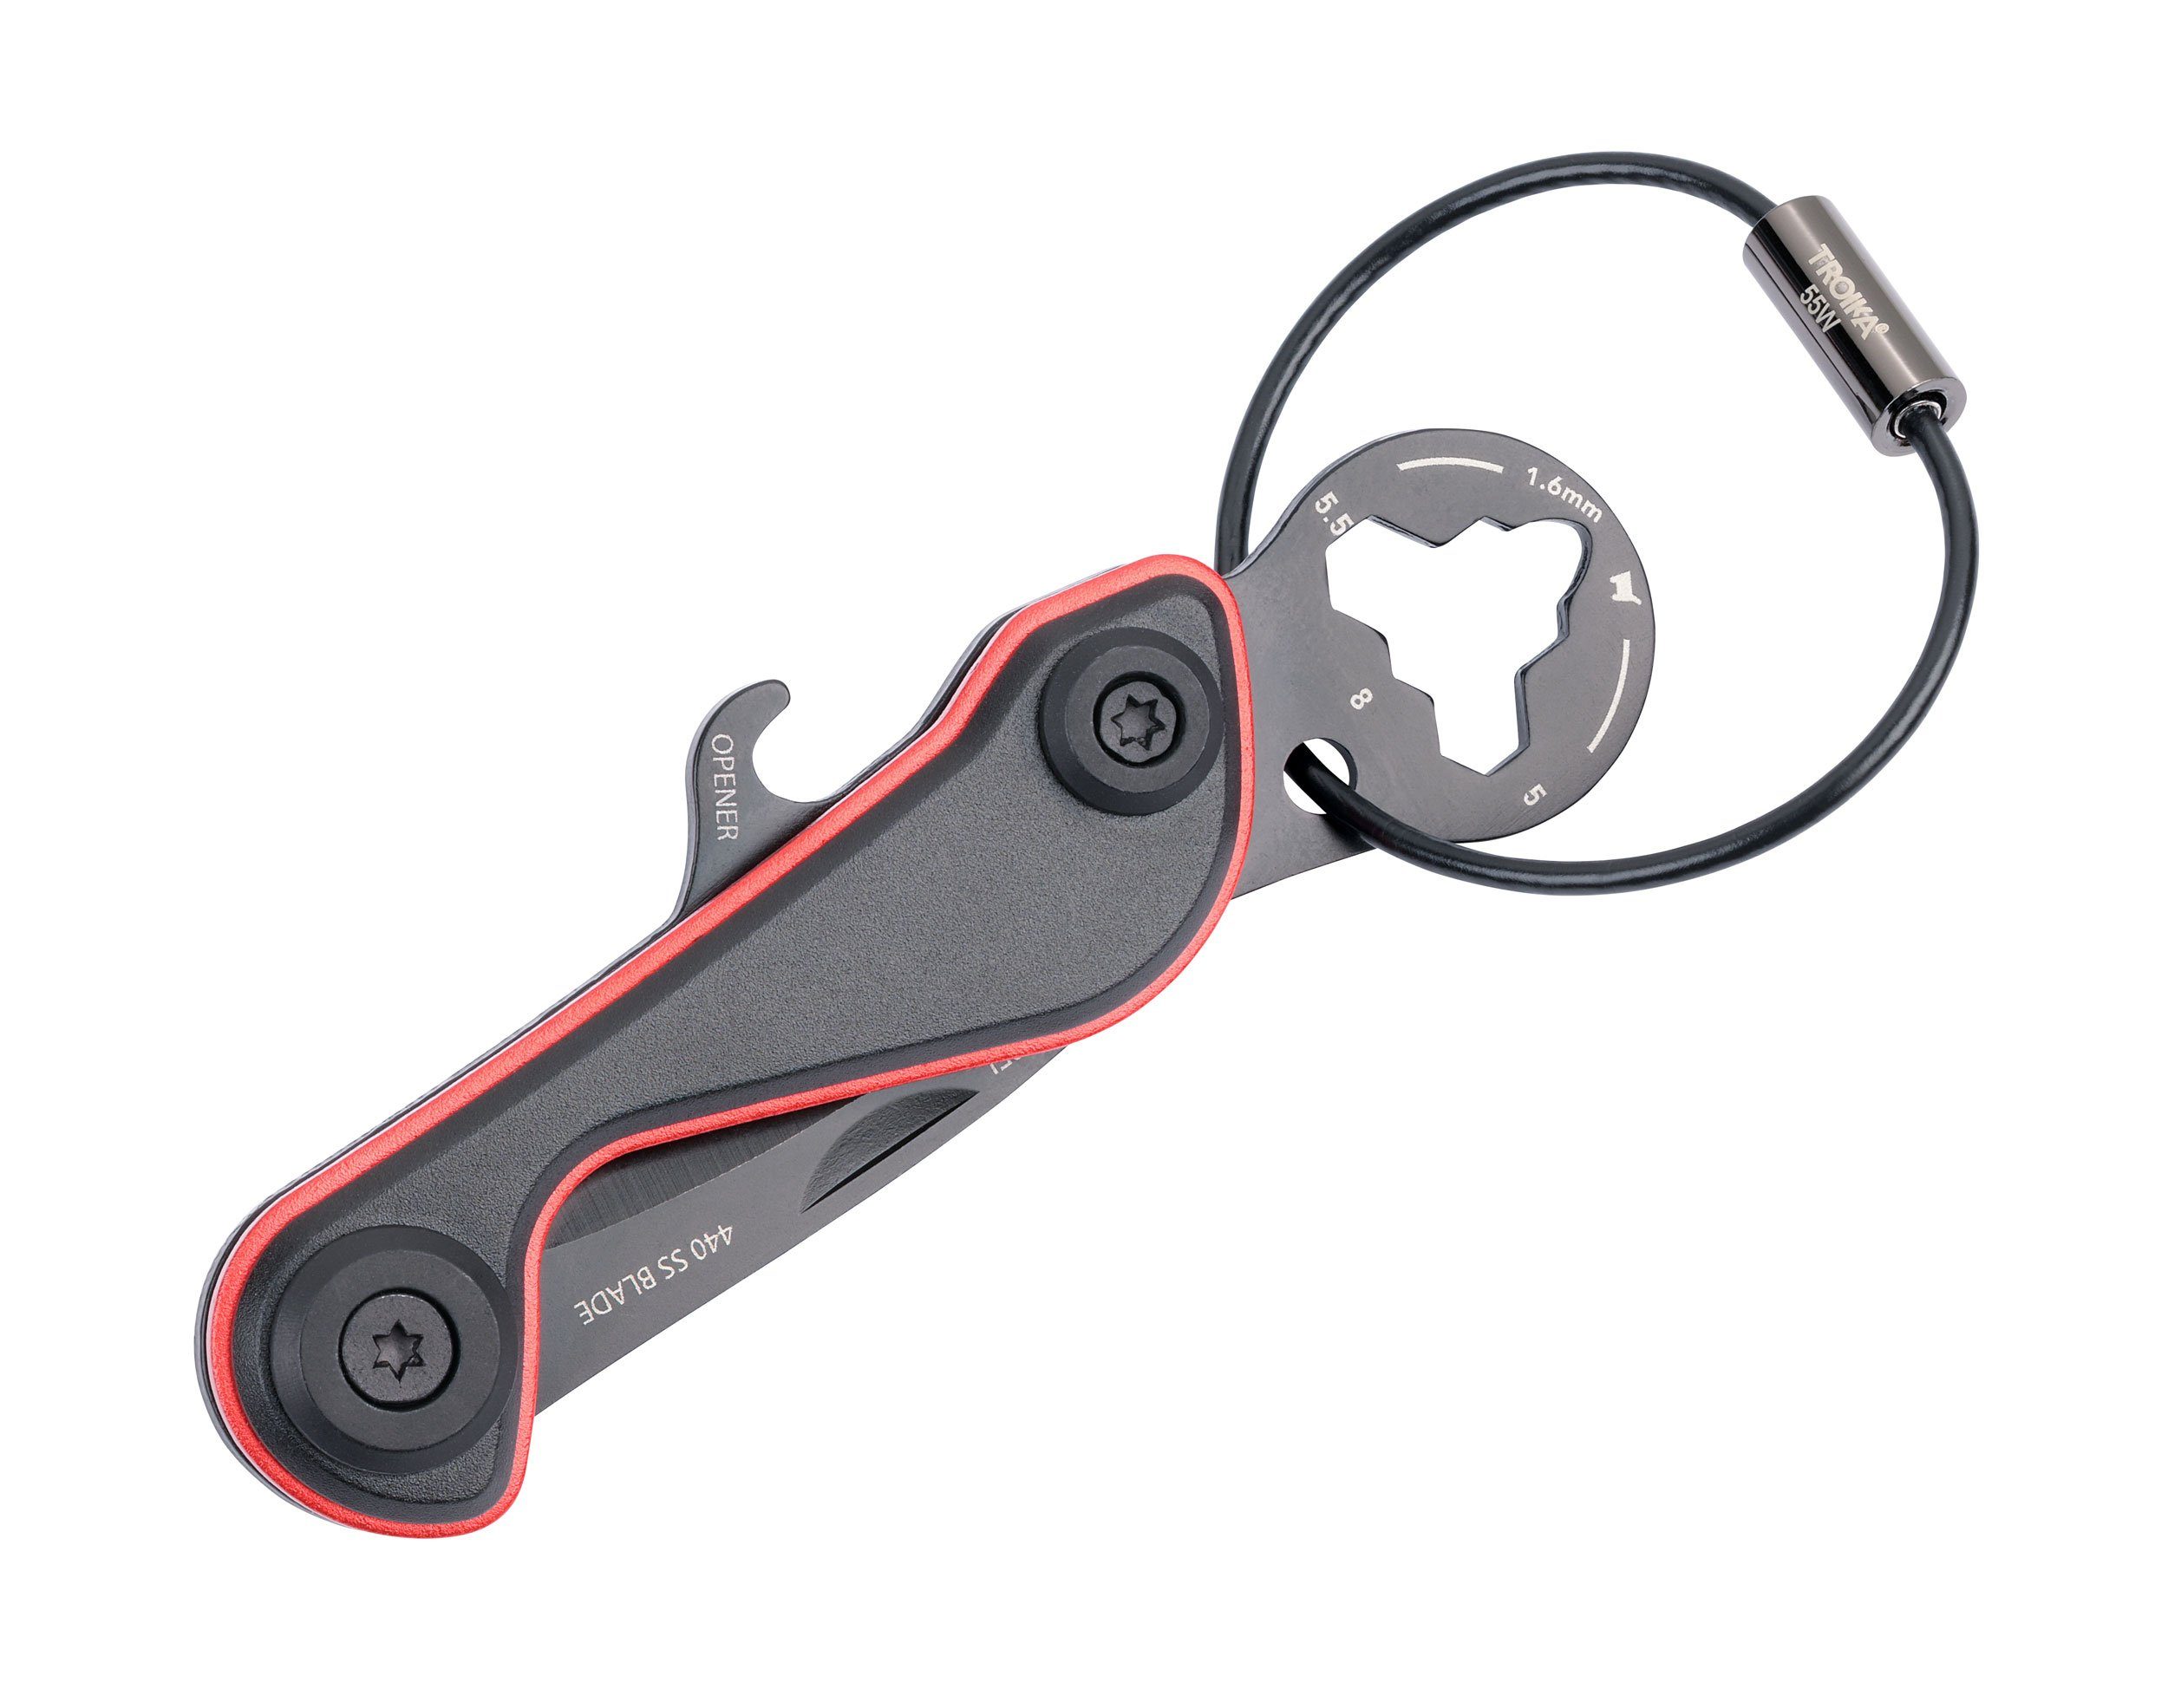 TROIKA Schlüsselanhänger Mini-Werkzeug mit 9 Funktionen - Multitool -  PARCEL CUT & CART, Super praktisch für viele